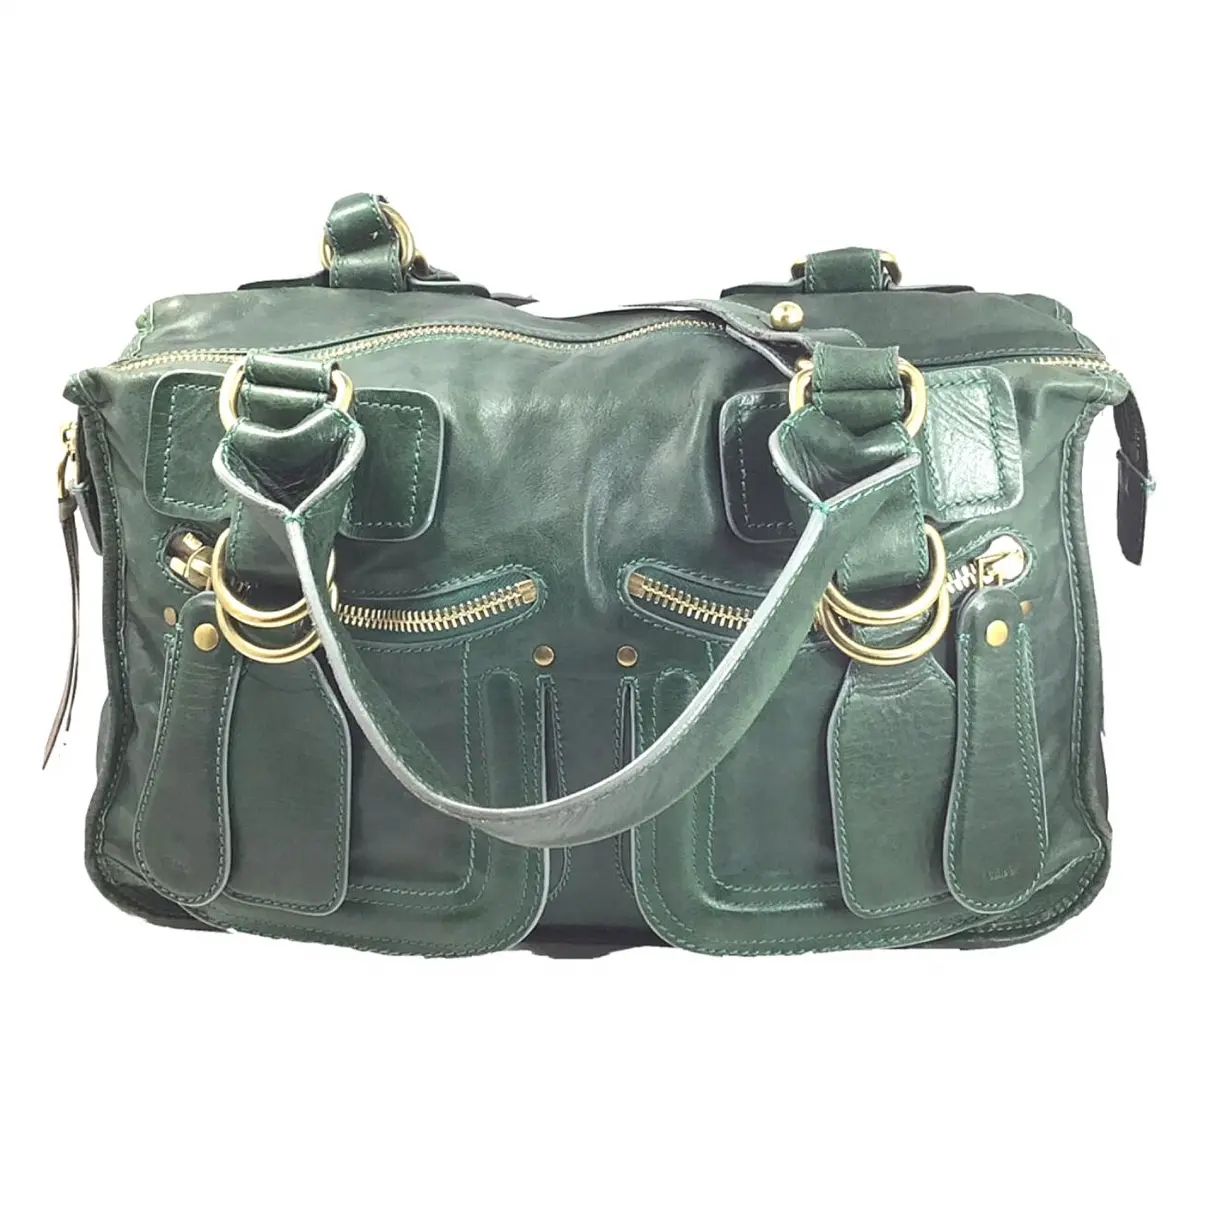 Bay leather satchel Chloé